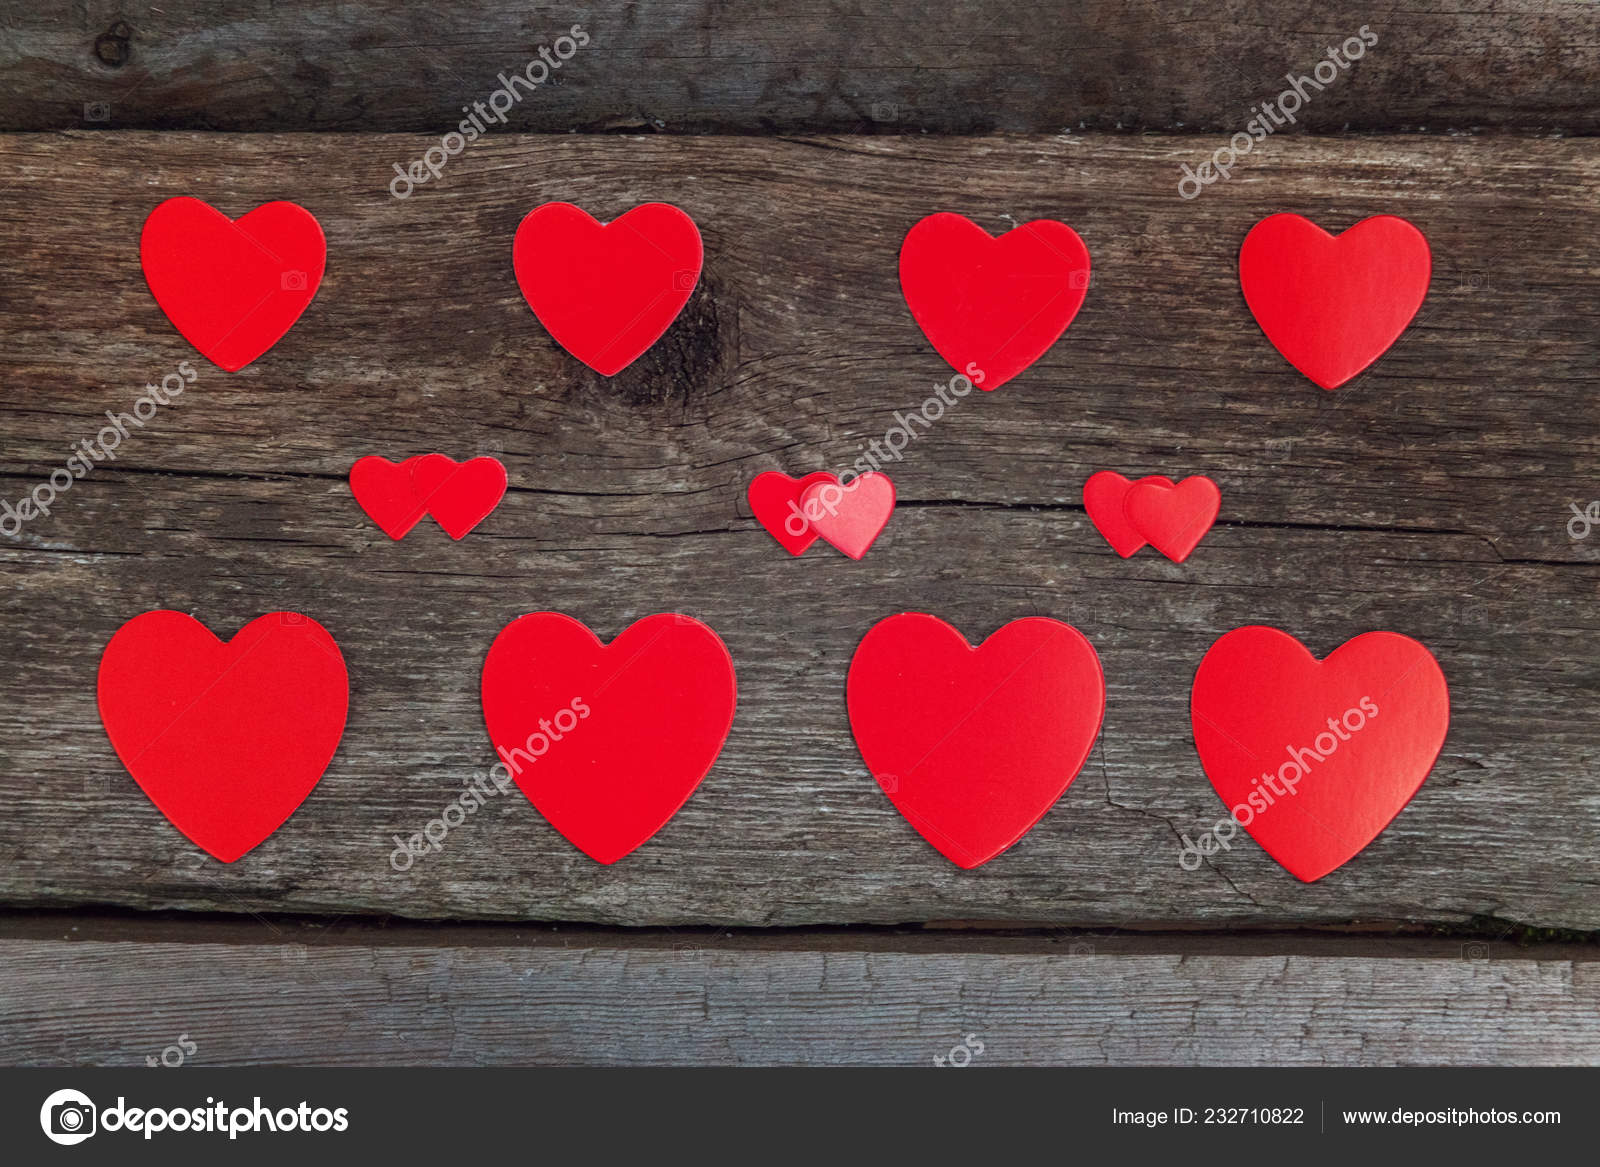 素朴なトレンディな古いビンテージ木製背景に赤いハートのバレンタイン背景コンセプト 幸せな恋人たちの日カード モックアップ コピー スペース トップ Vew フラット レイアウト ストック写真 C Luljo